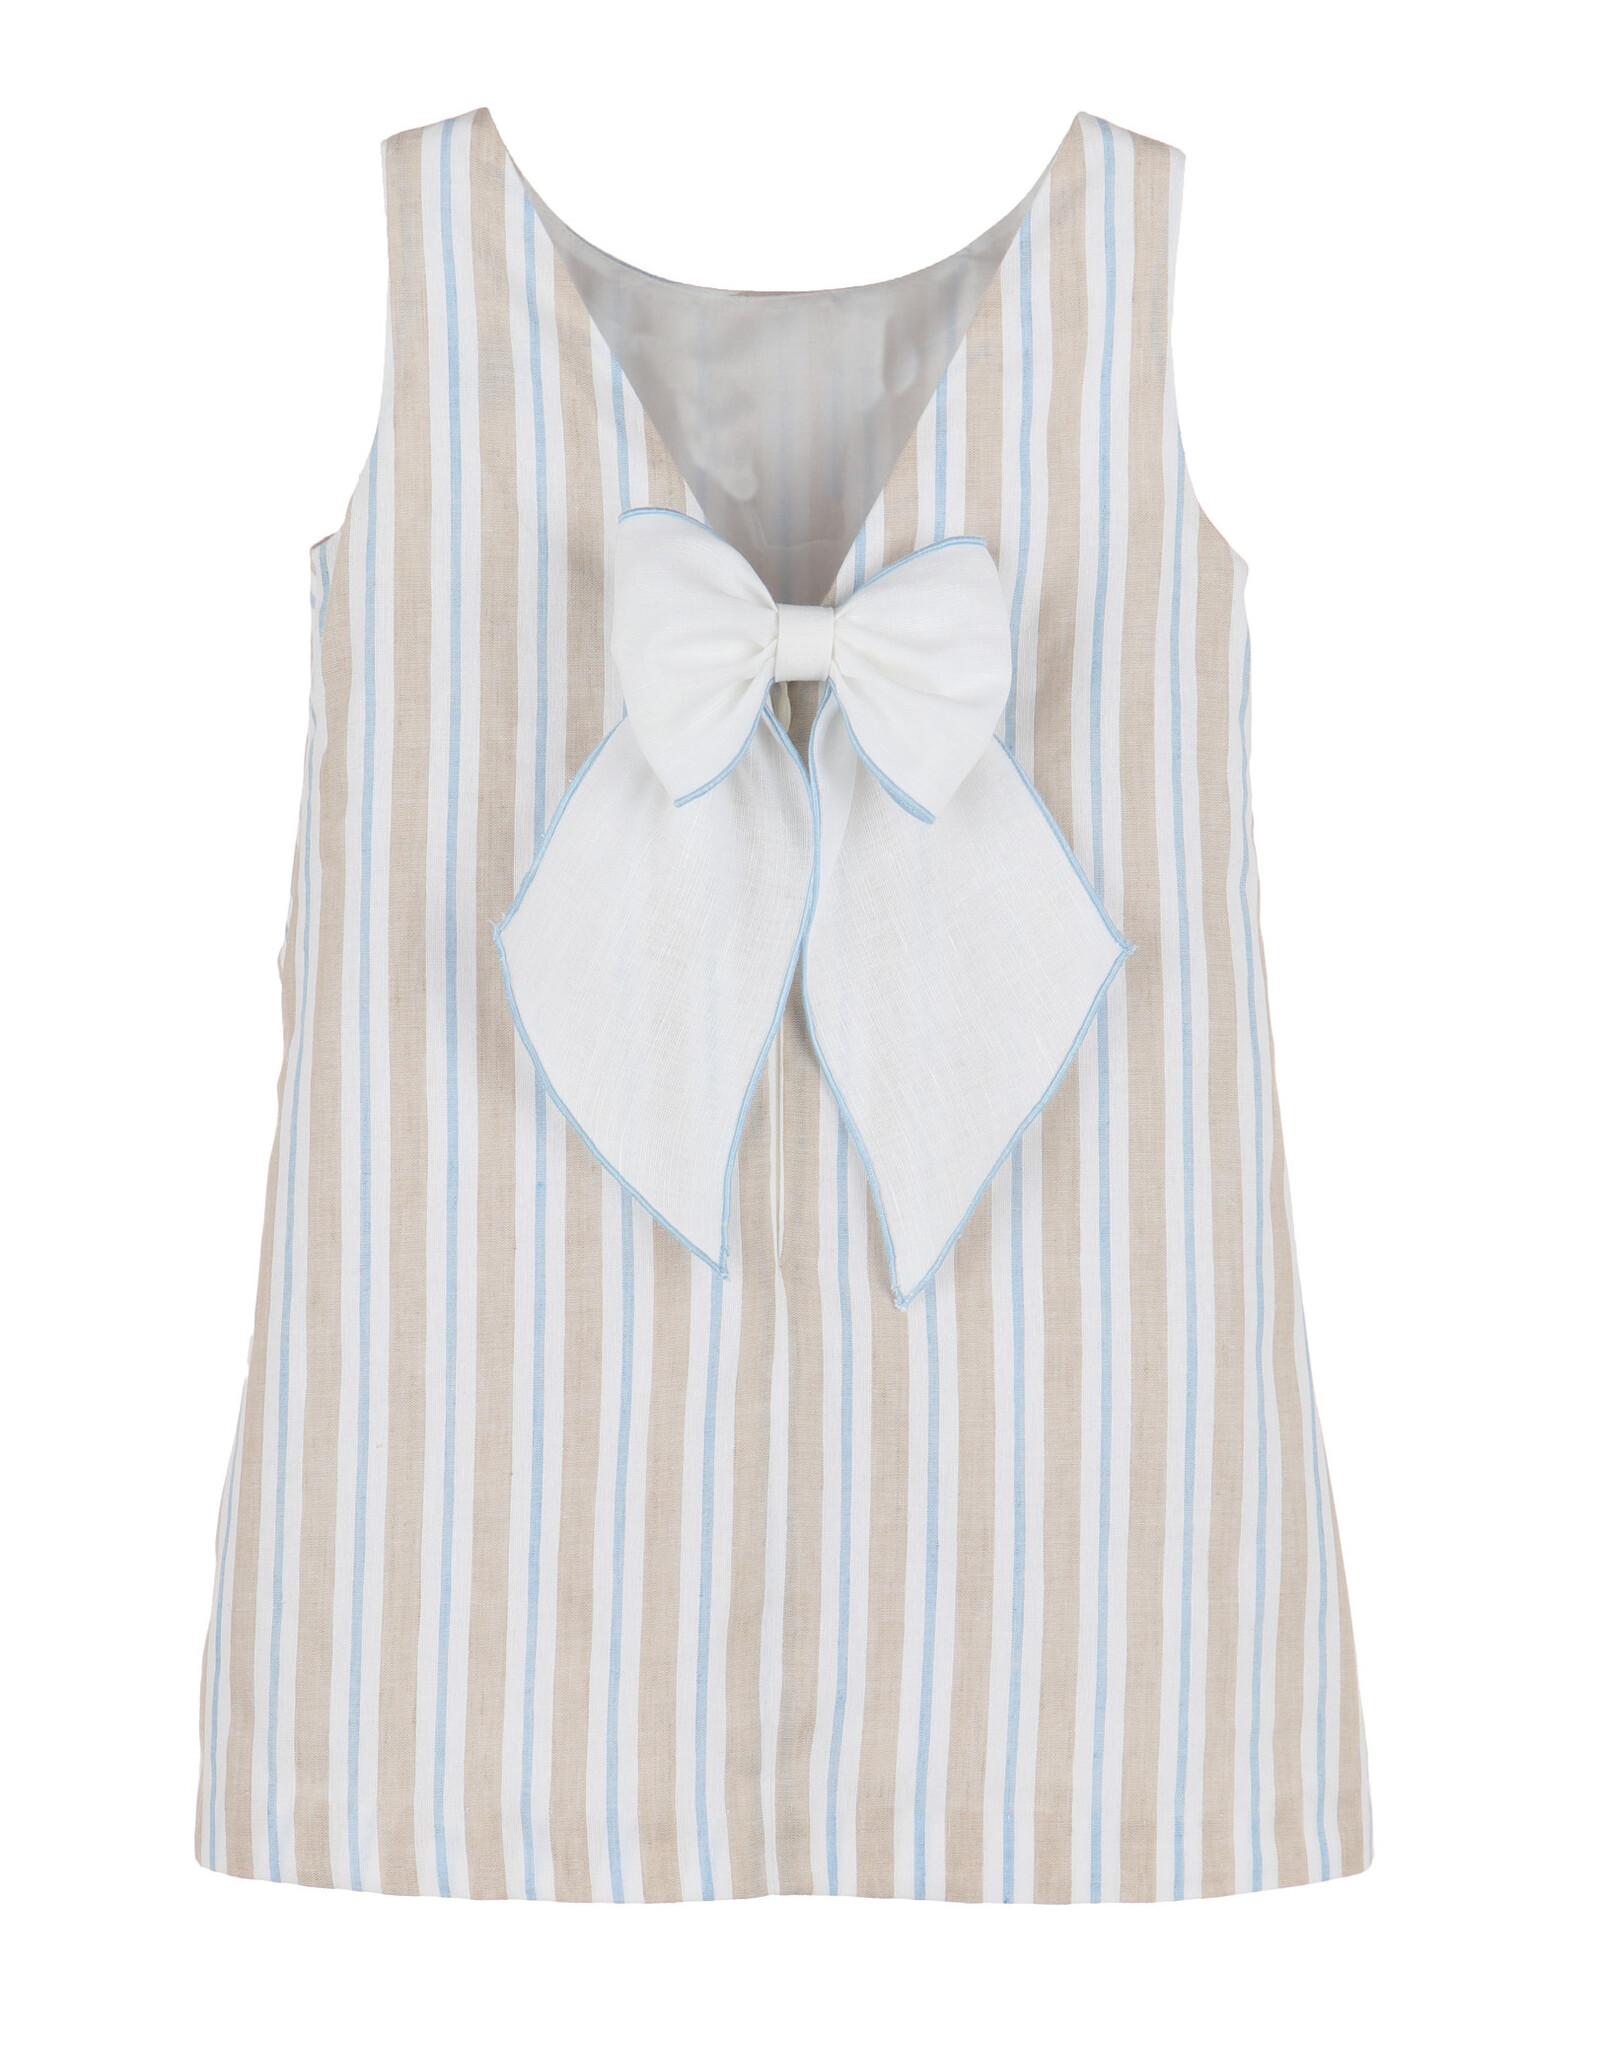 Casero Stripes Cross Front Dress